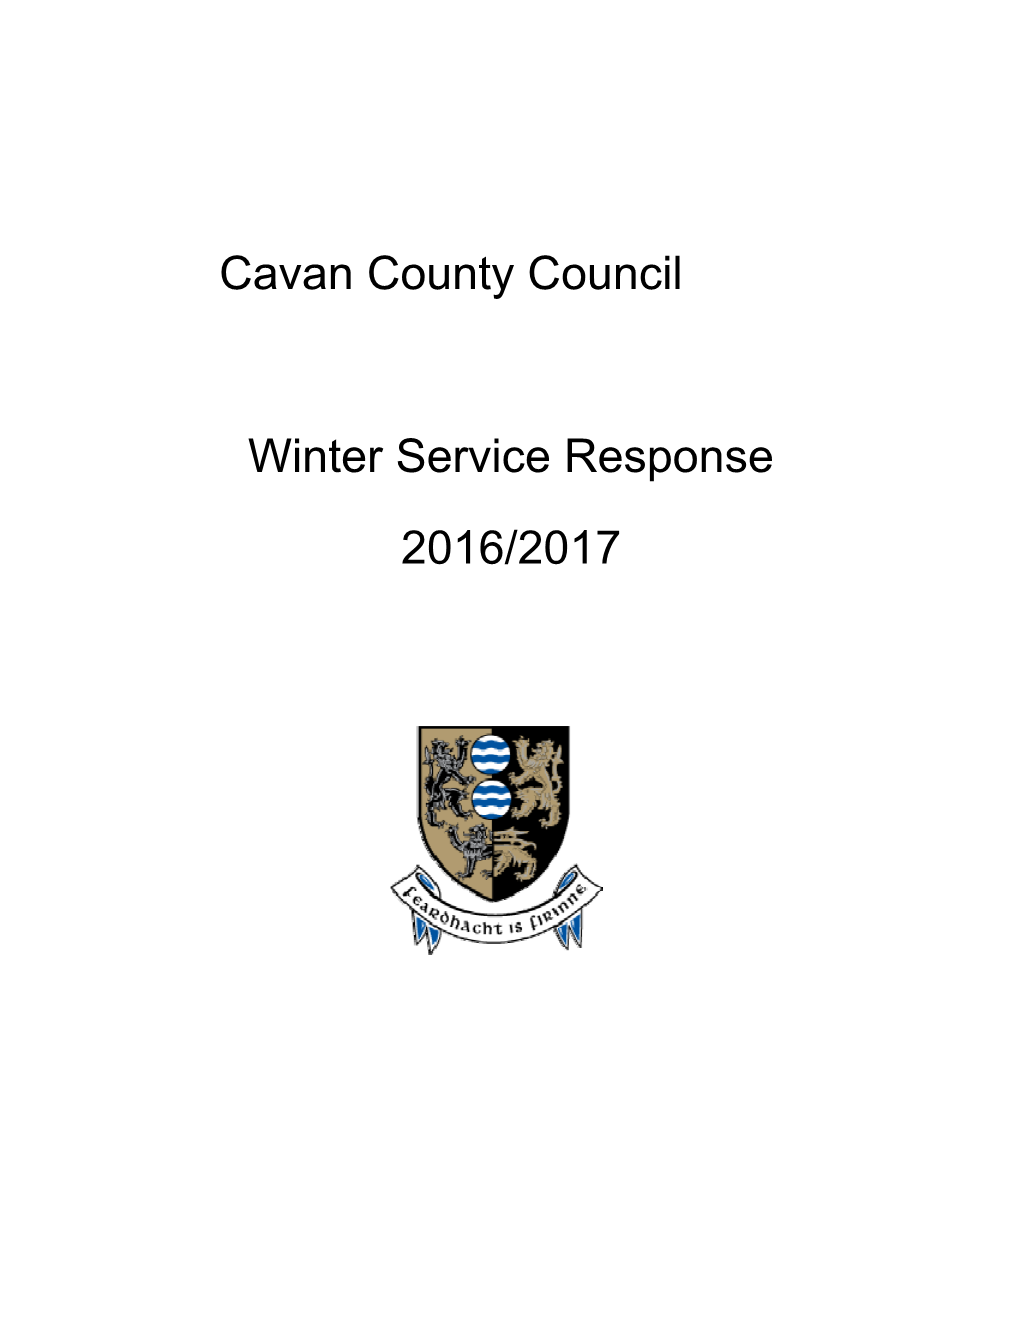 Cavan Co Co, Winter Service Response, Nov 2016